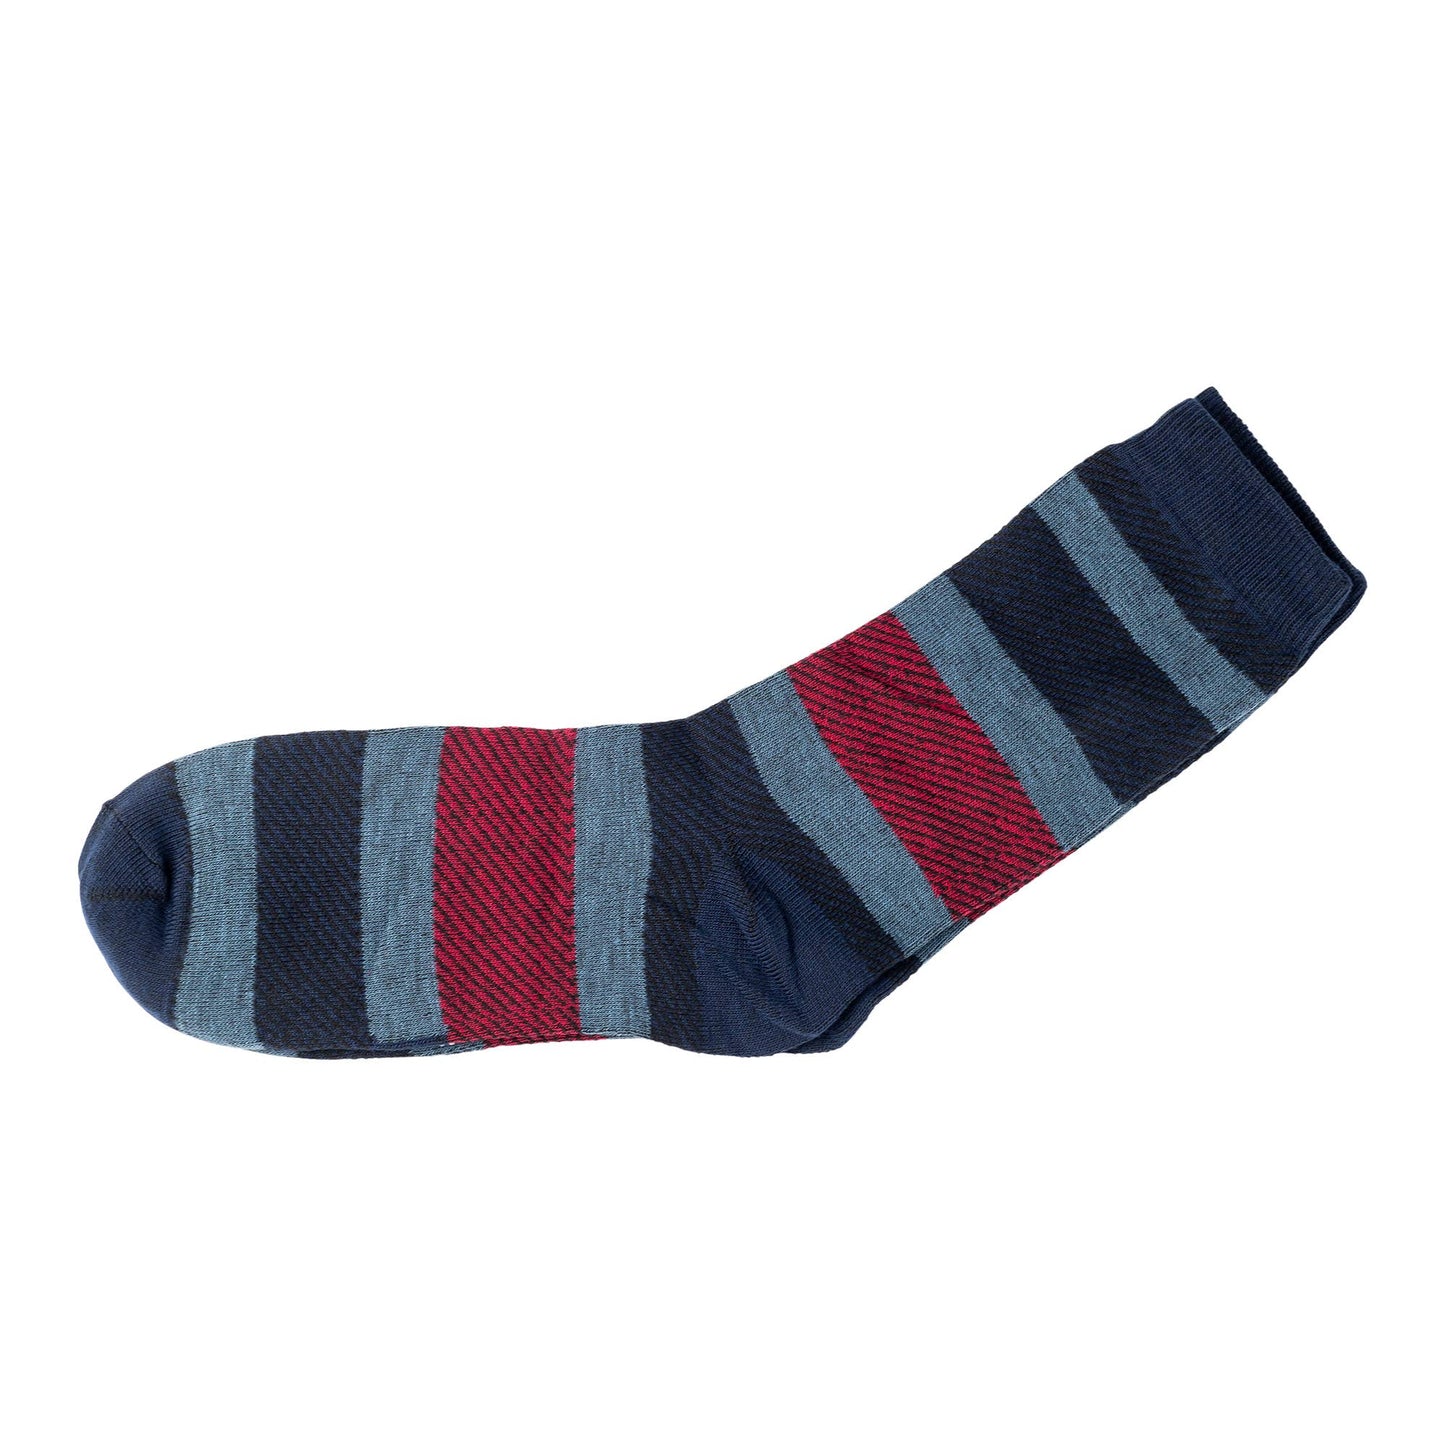 Men's Socks - 5 Boxed Pair